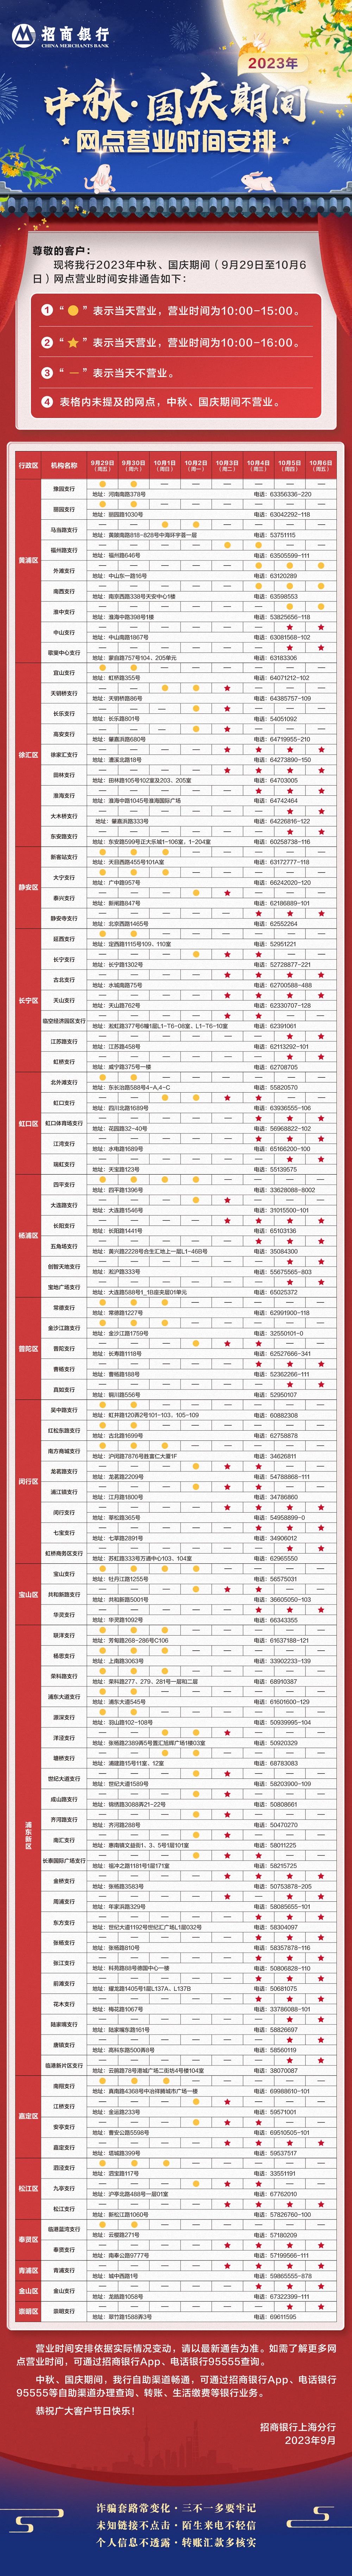 2023年中秋、国庆节期间上海分行网点营业时间安排长图 (1).jpg